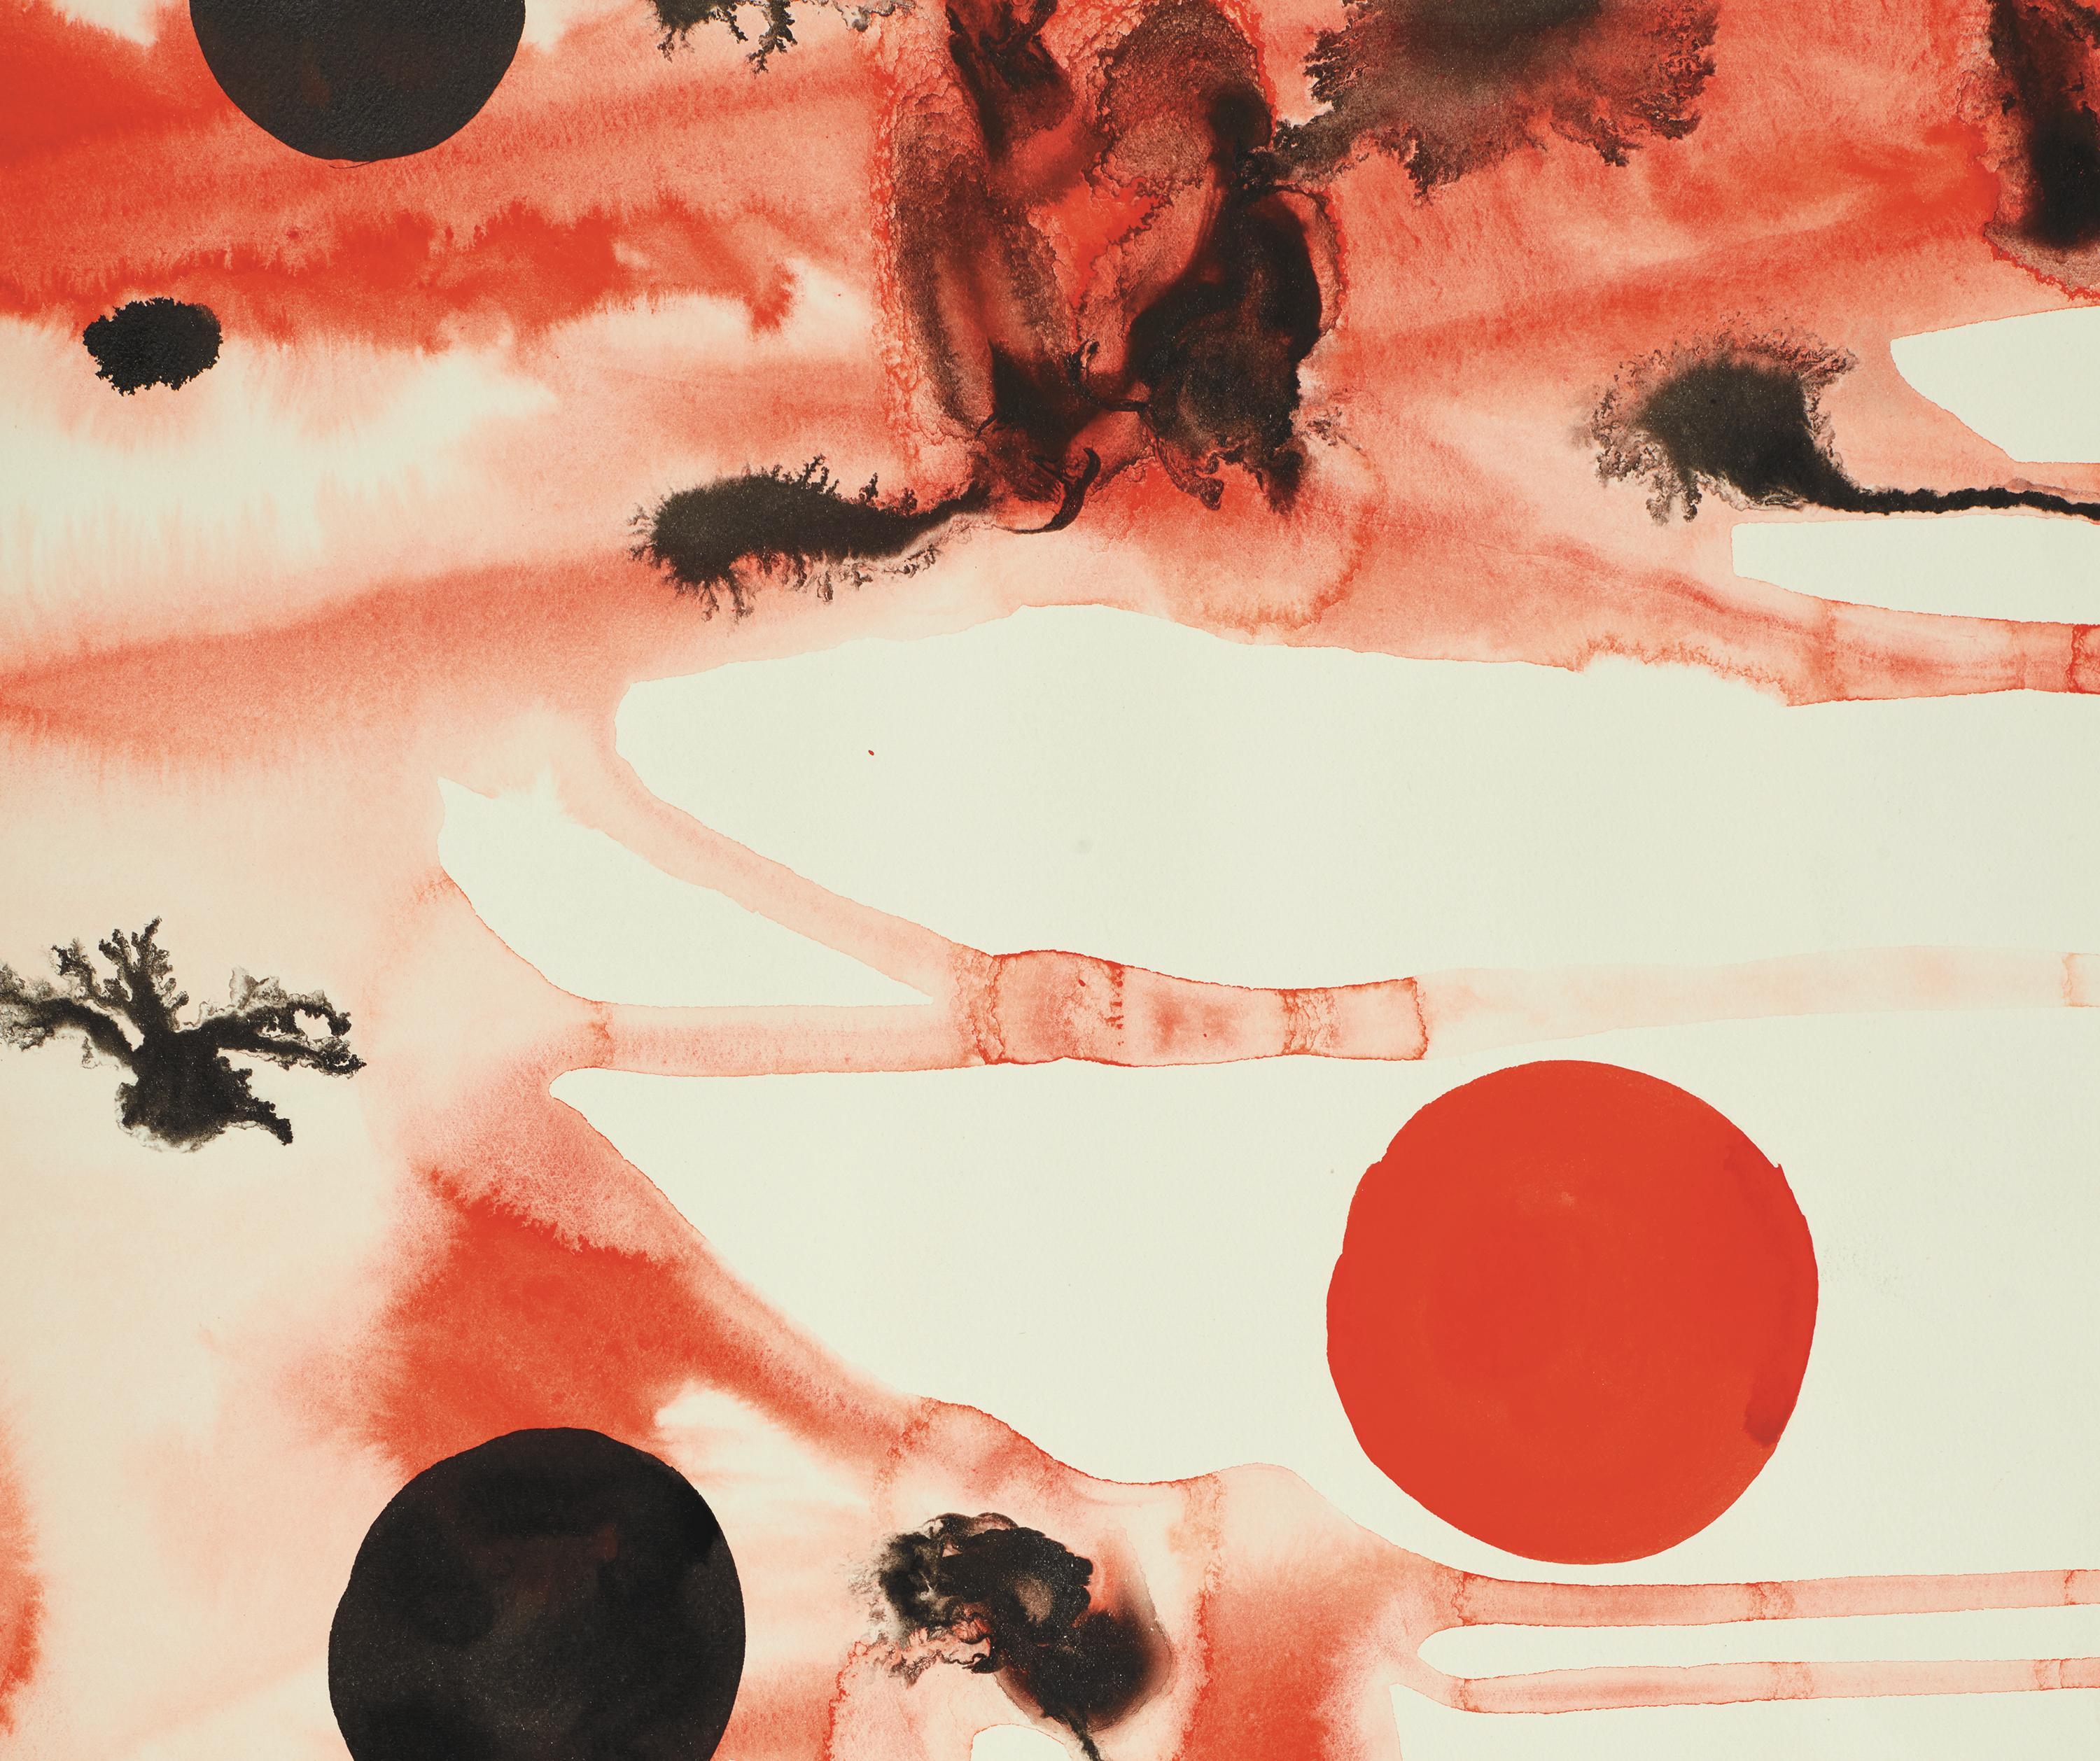 Koloniale Organismen (Weiß), Abstract Painting, von Alexander Calder